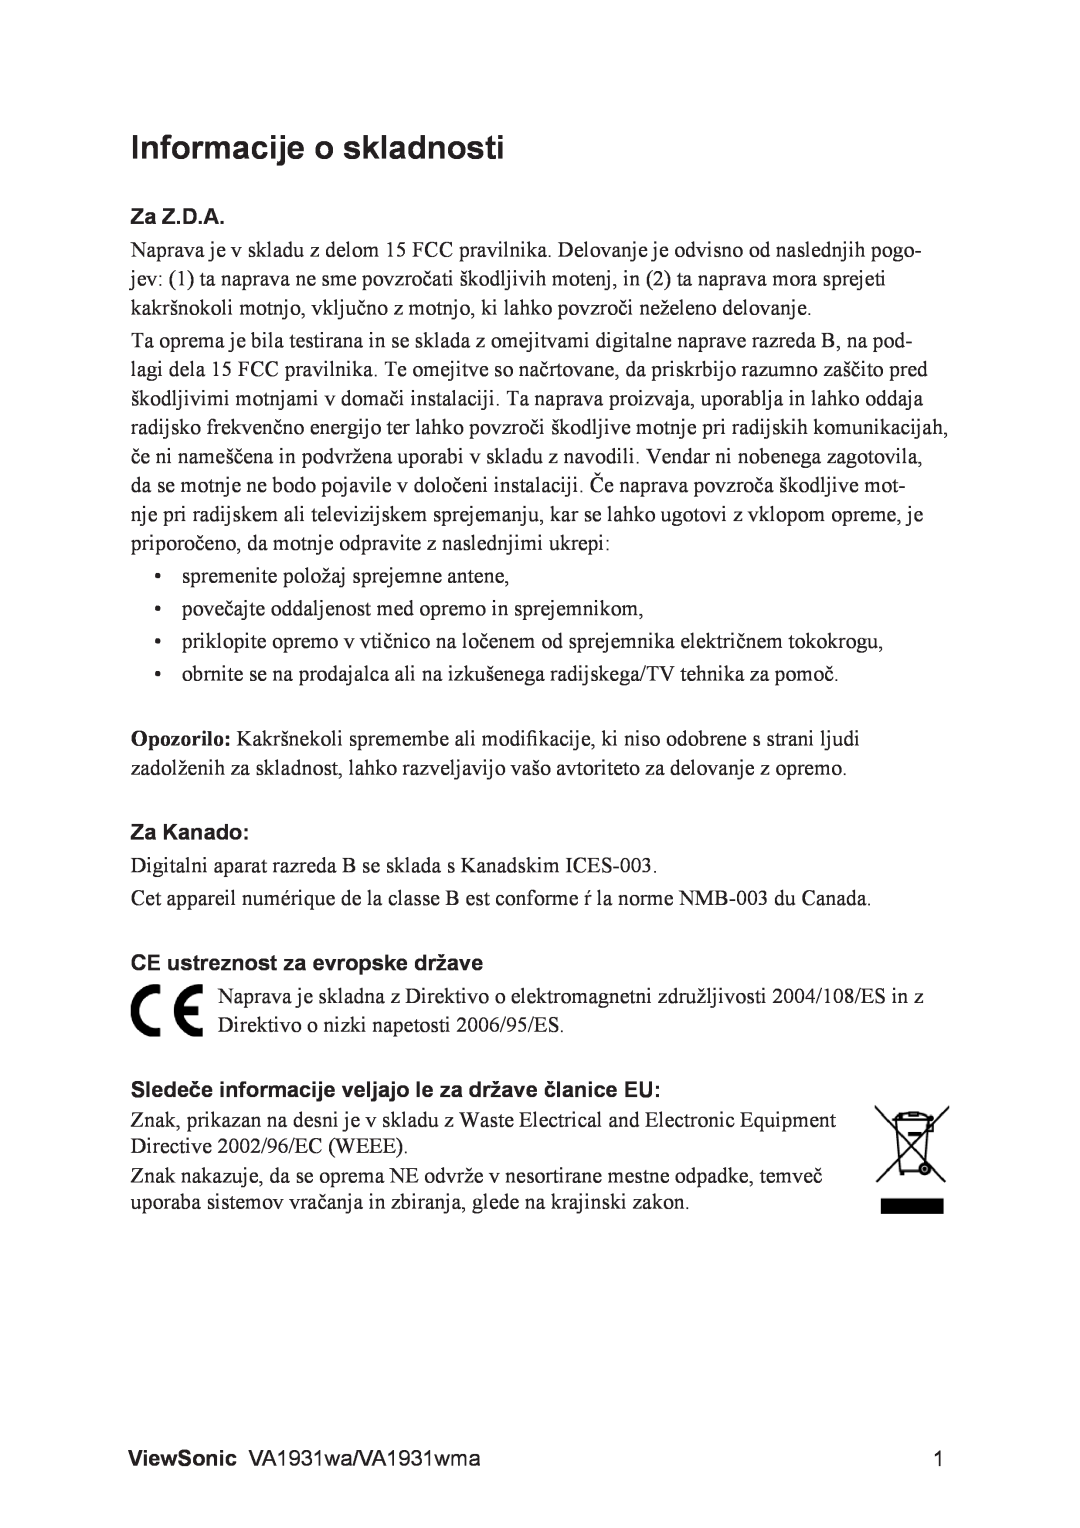 ViewSonic VS13208, VA1931WMA manual Informacije o skladnosti, Za Z.D.A, Za Kanado, CE ustreznost za evropske države 